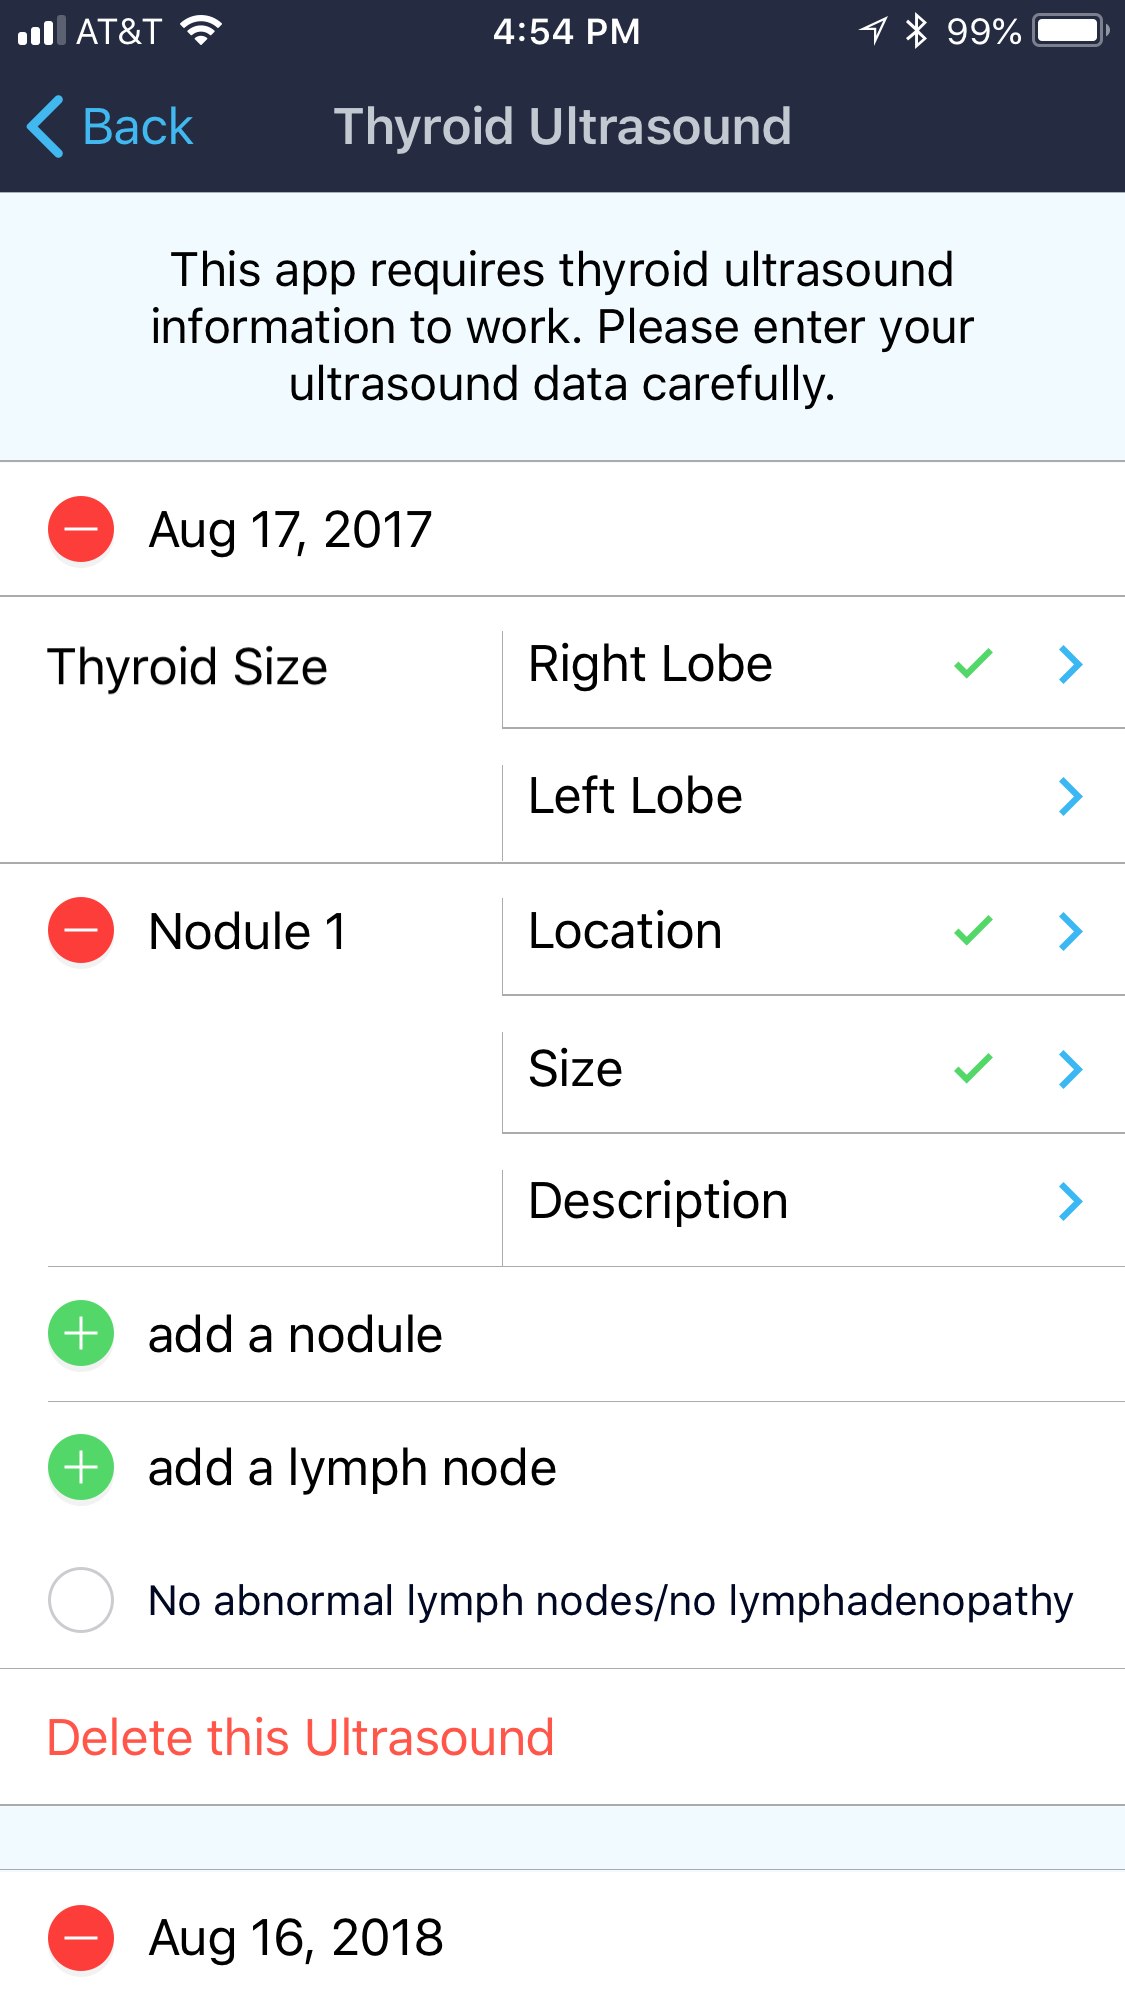 Thyroid Ultrasound Entry Form